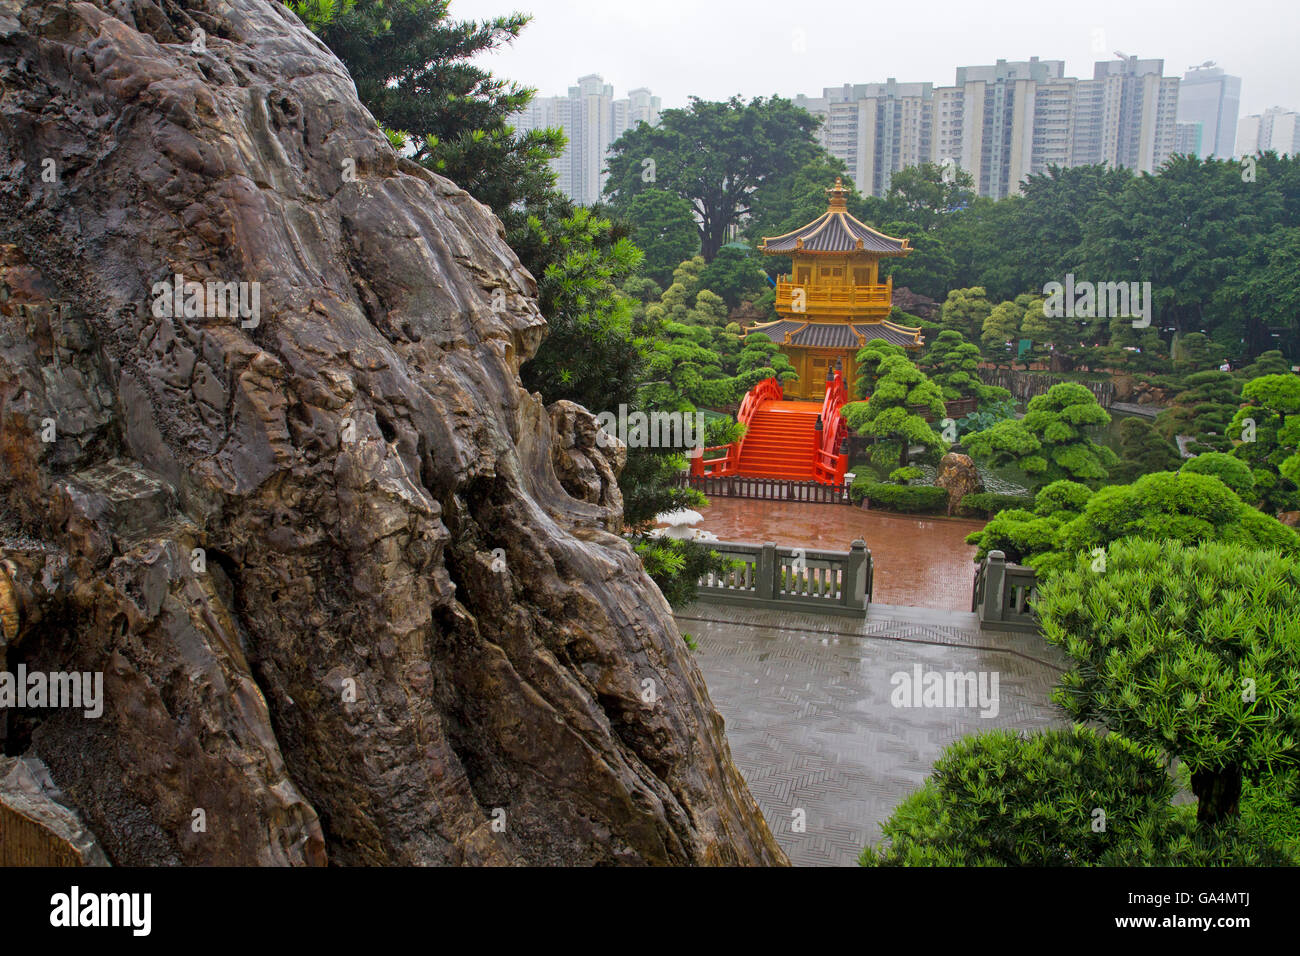 Nan Lian Gardens in Hong Kong Stock Photo